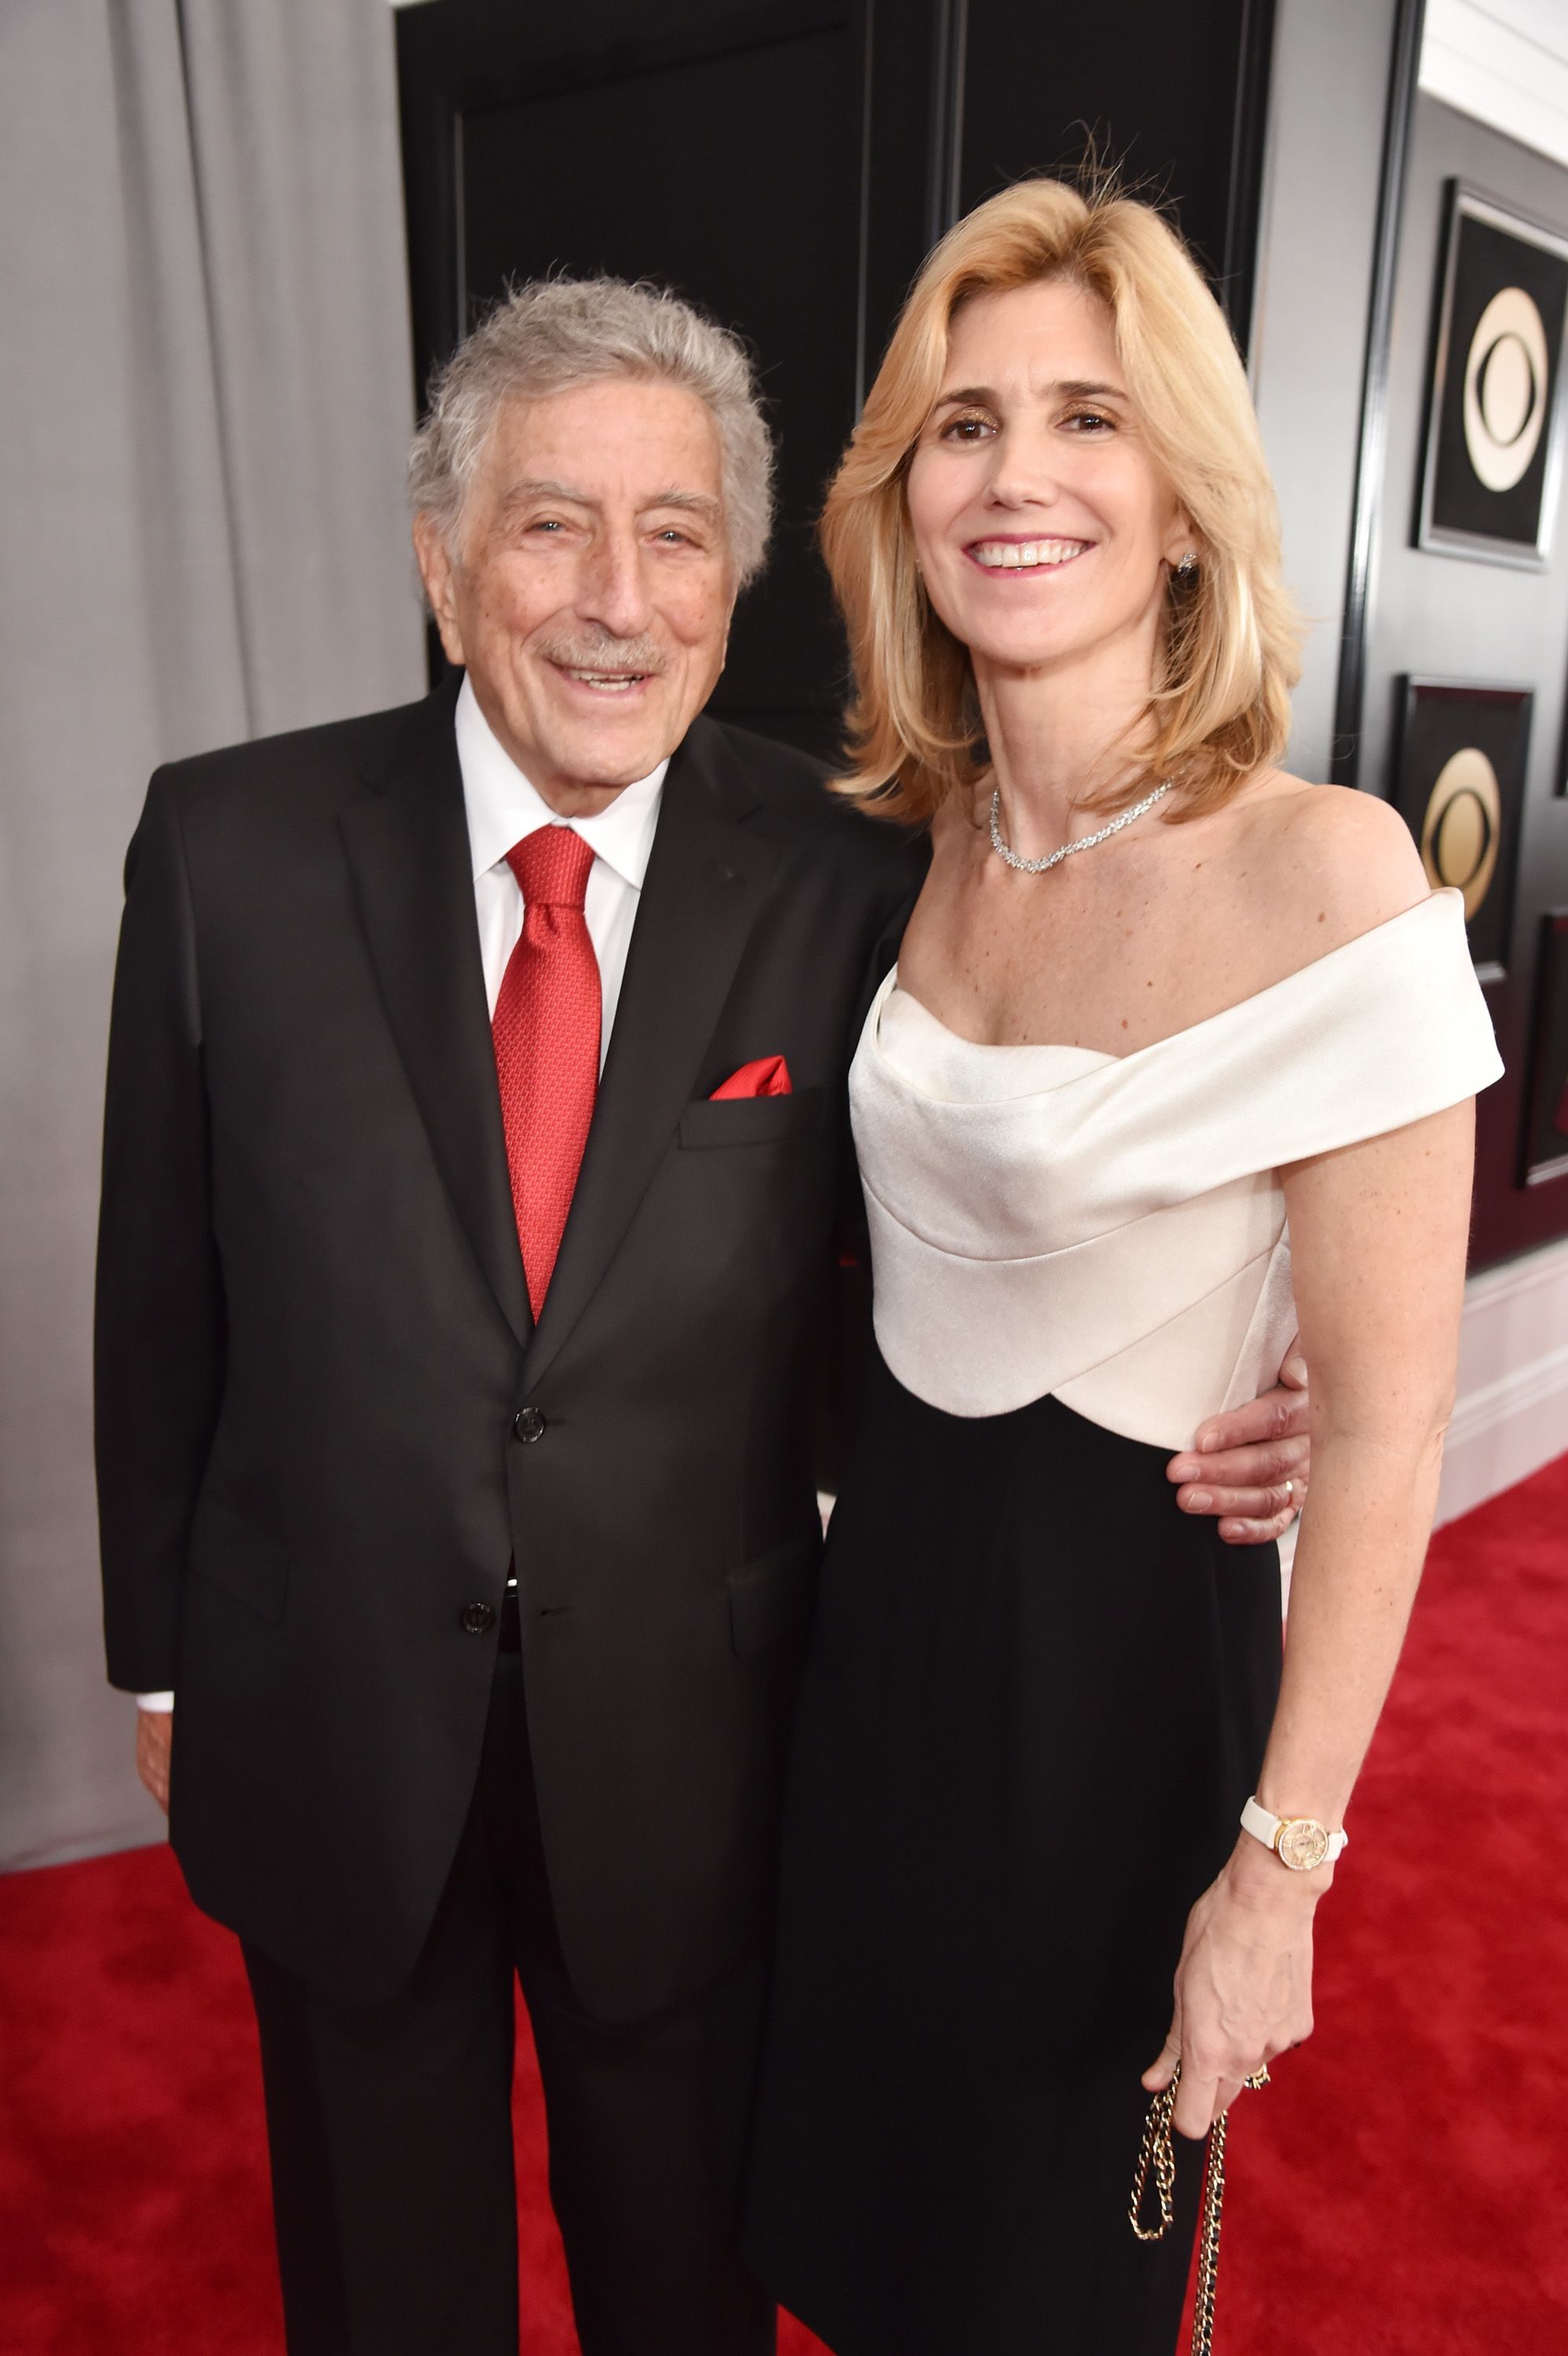 Sänger Tony Bennett und seine Frau Susan Crow besuchen die 60th Annual Grammy Awards im Madison Square Garden am 28. Januar 2018 in New York City. | Quelle: © Getty Images